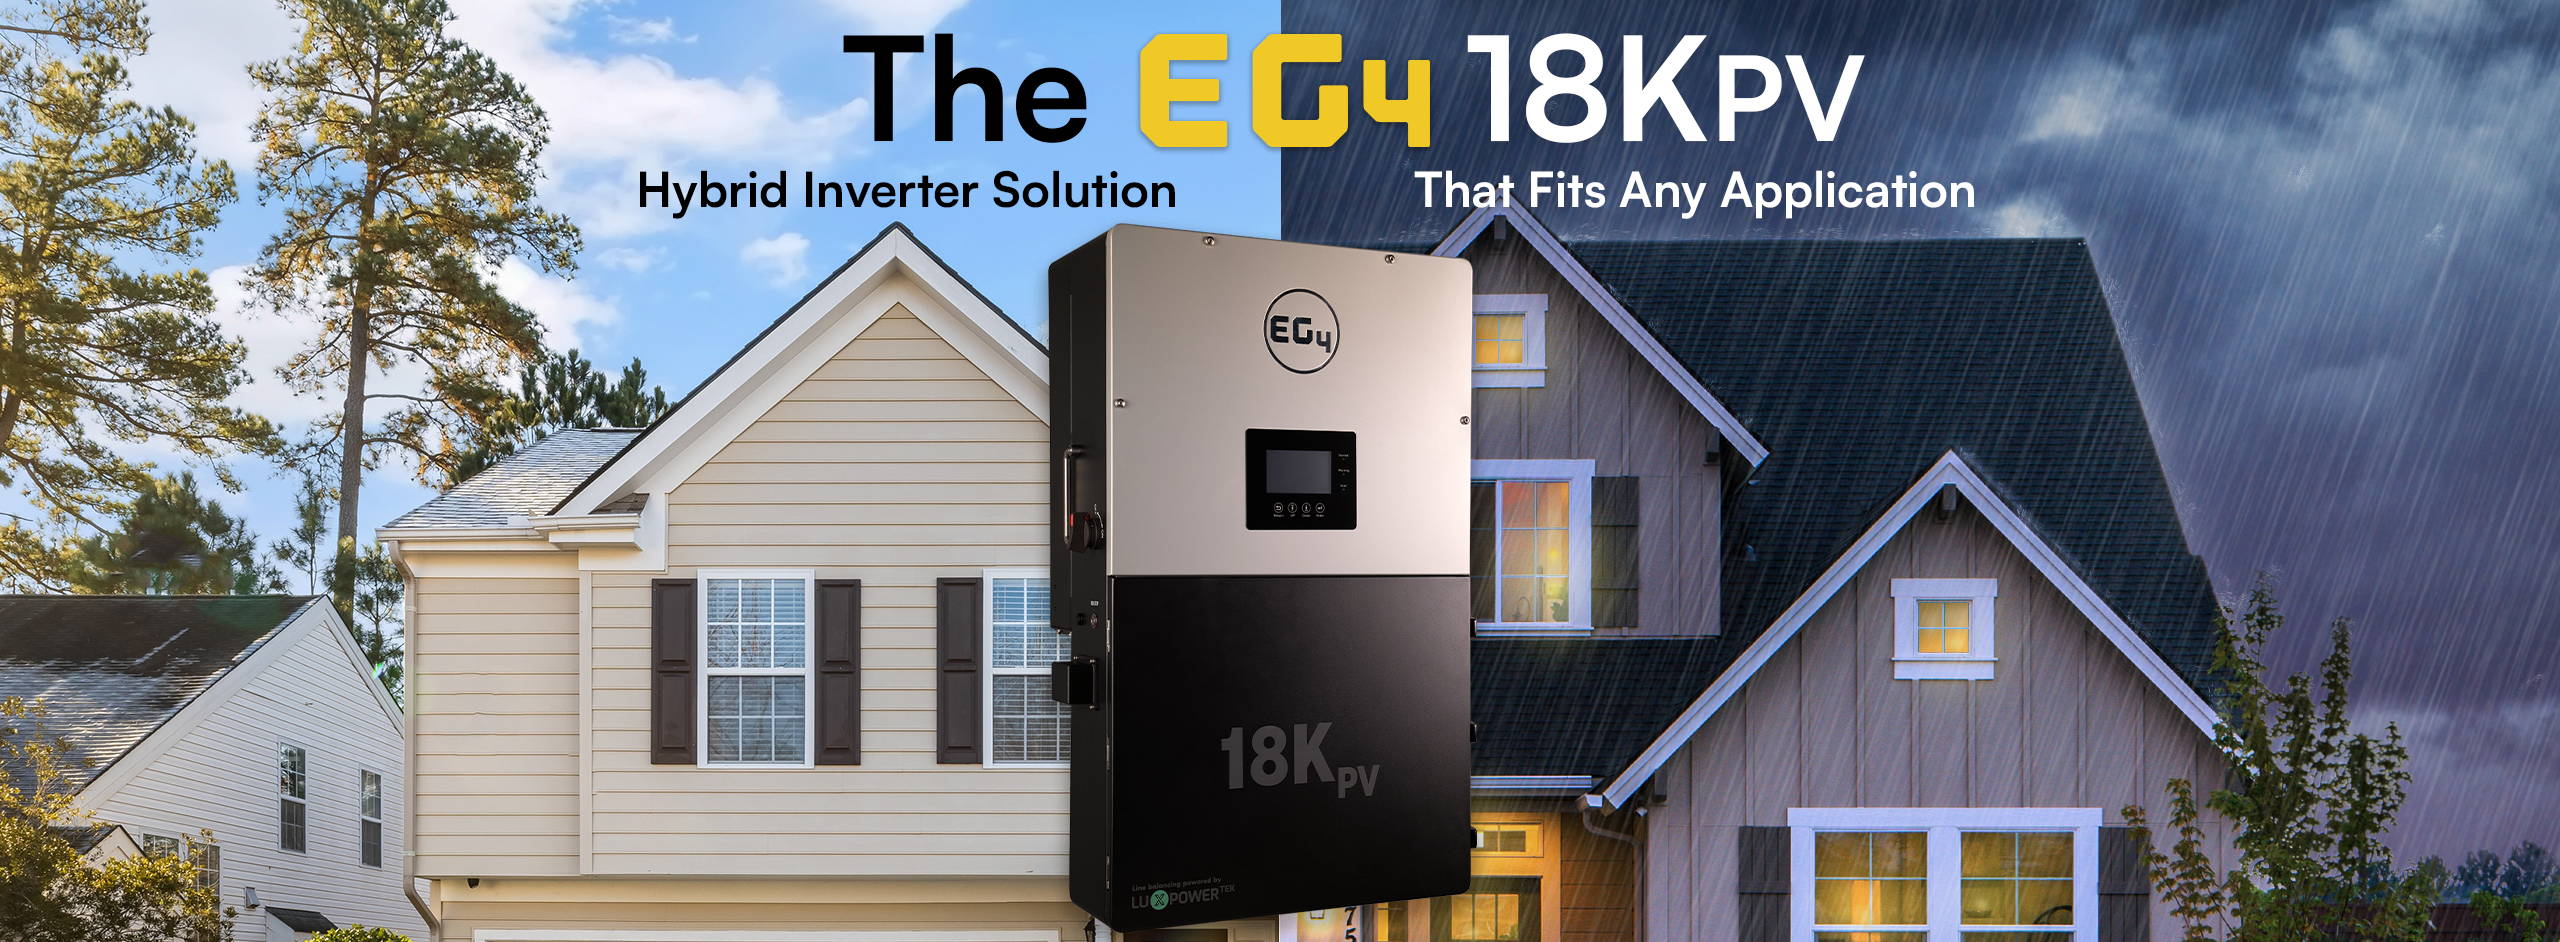 The eg4 18kPV Hybrid Inverter Solution